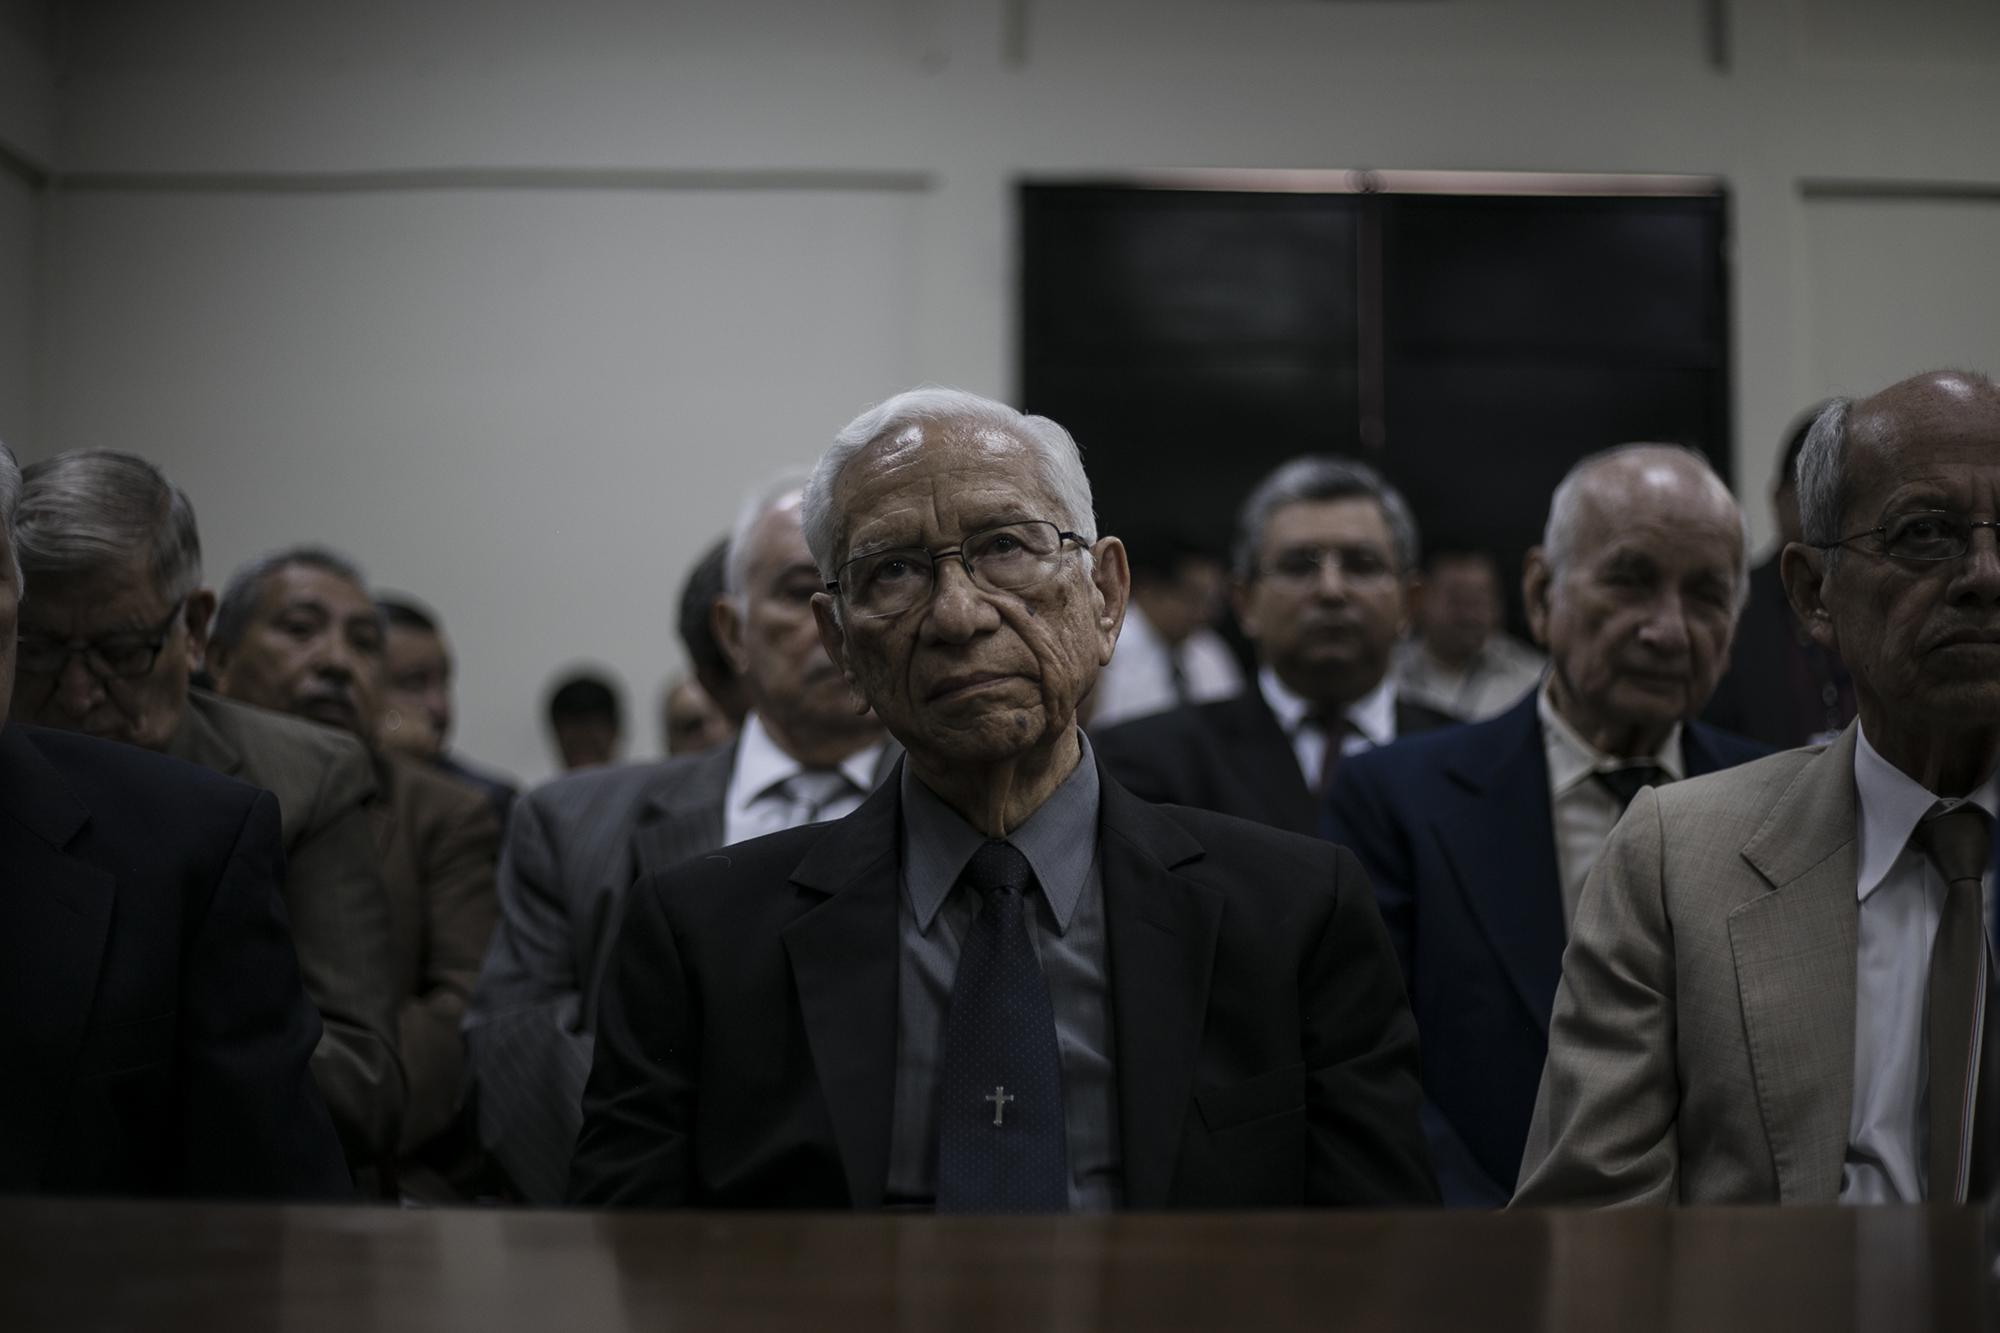 El exministro de Defensa, José Guillermo García, y demás militares acusados por la masacre de El Mozote comparecen ante el juzgado. 29 de marzo de 2017. Foto: Fred Ramos